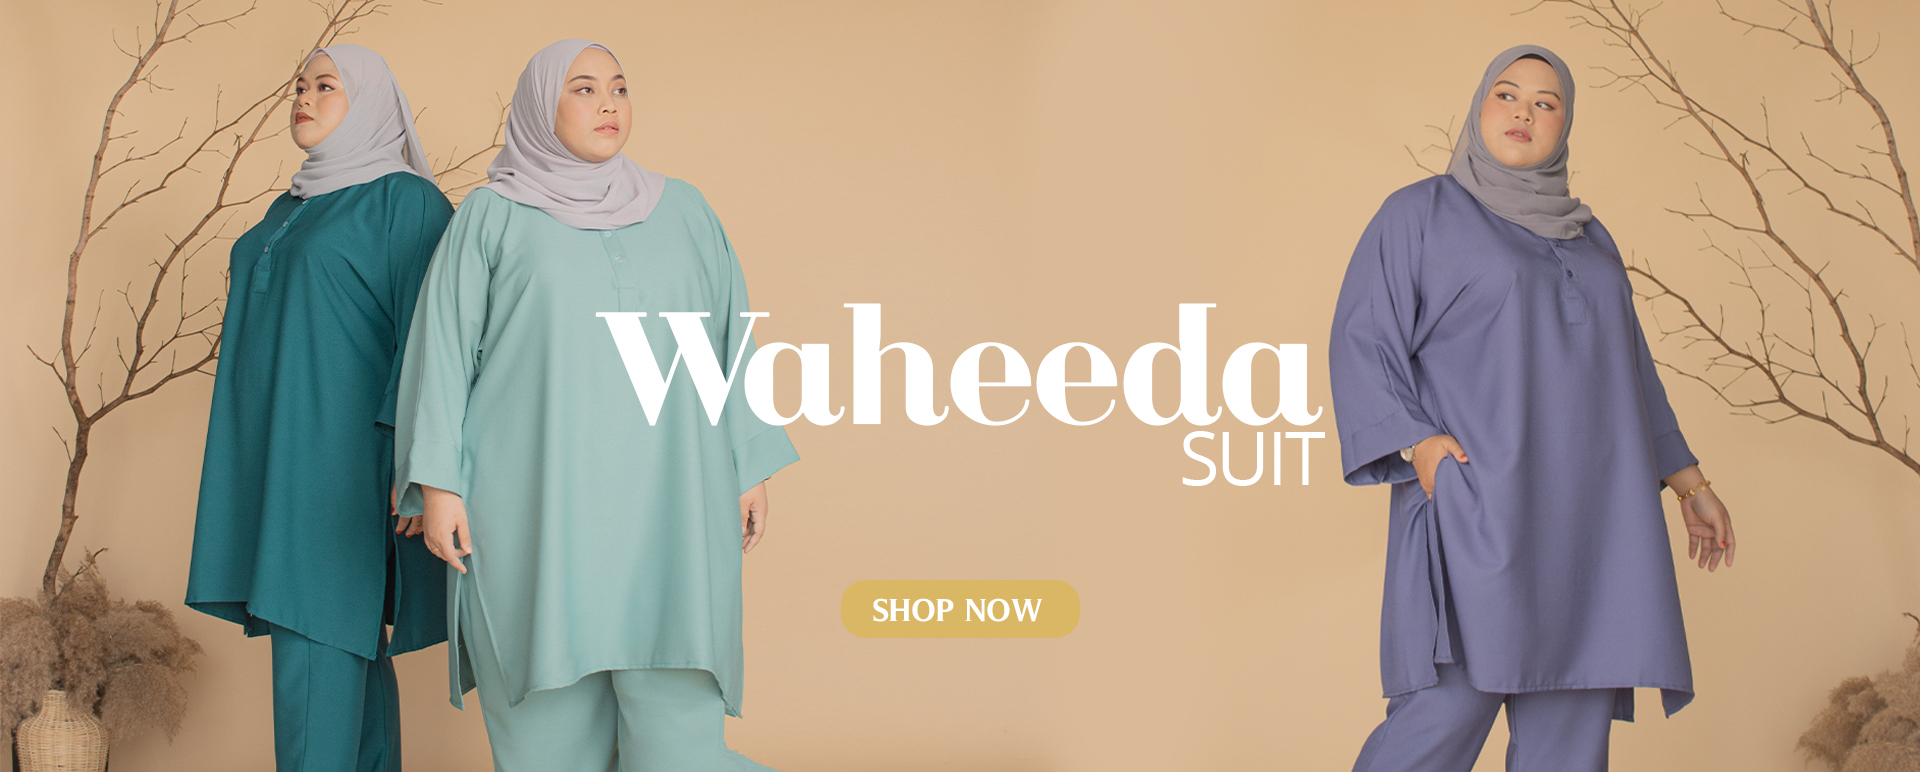 Waheeda Suit